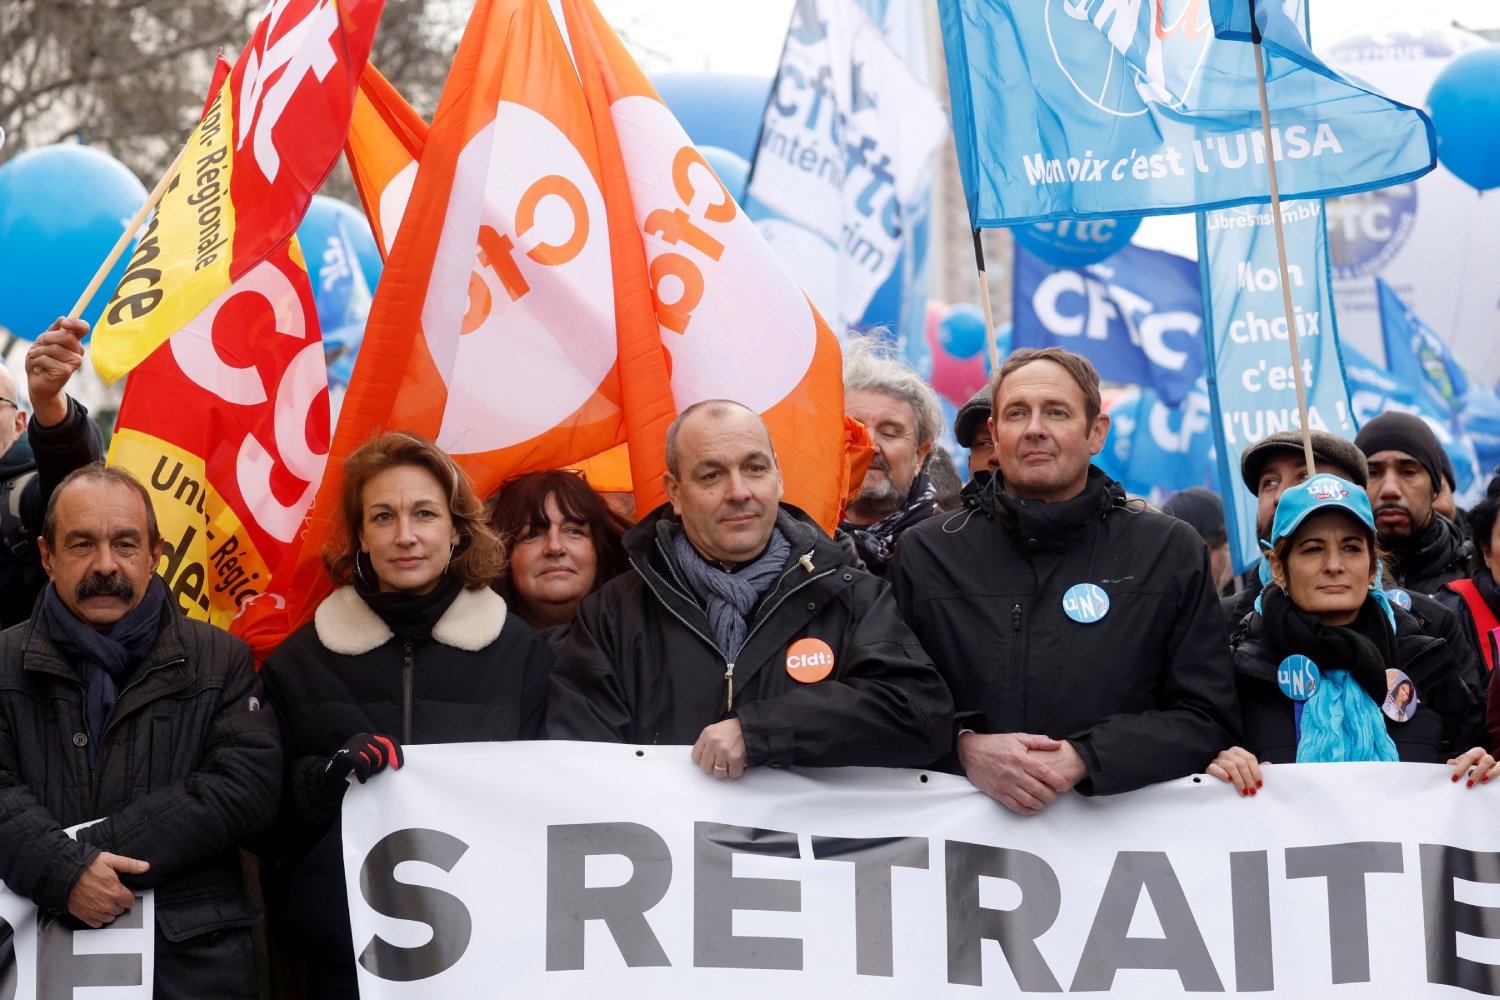 retraites comment les syndicats veulent eviter limpopularite